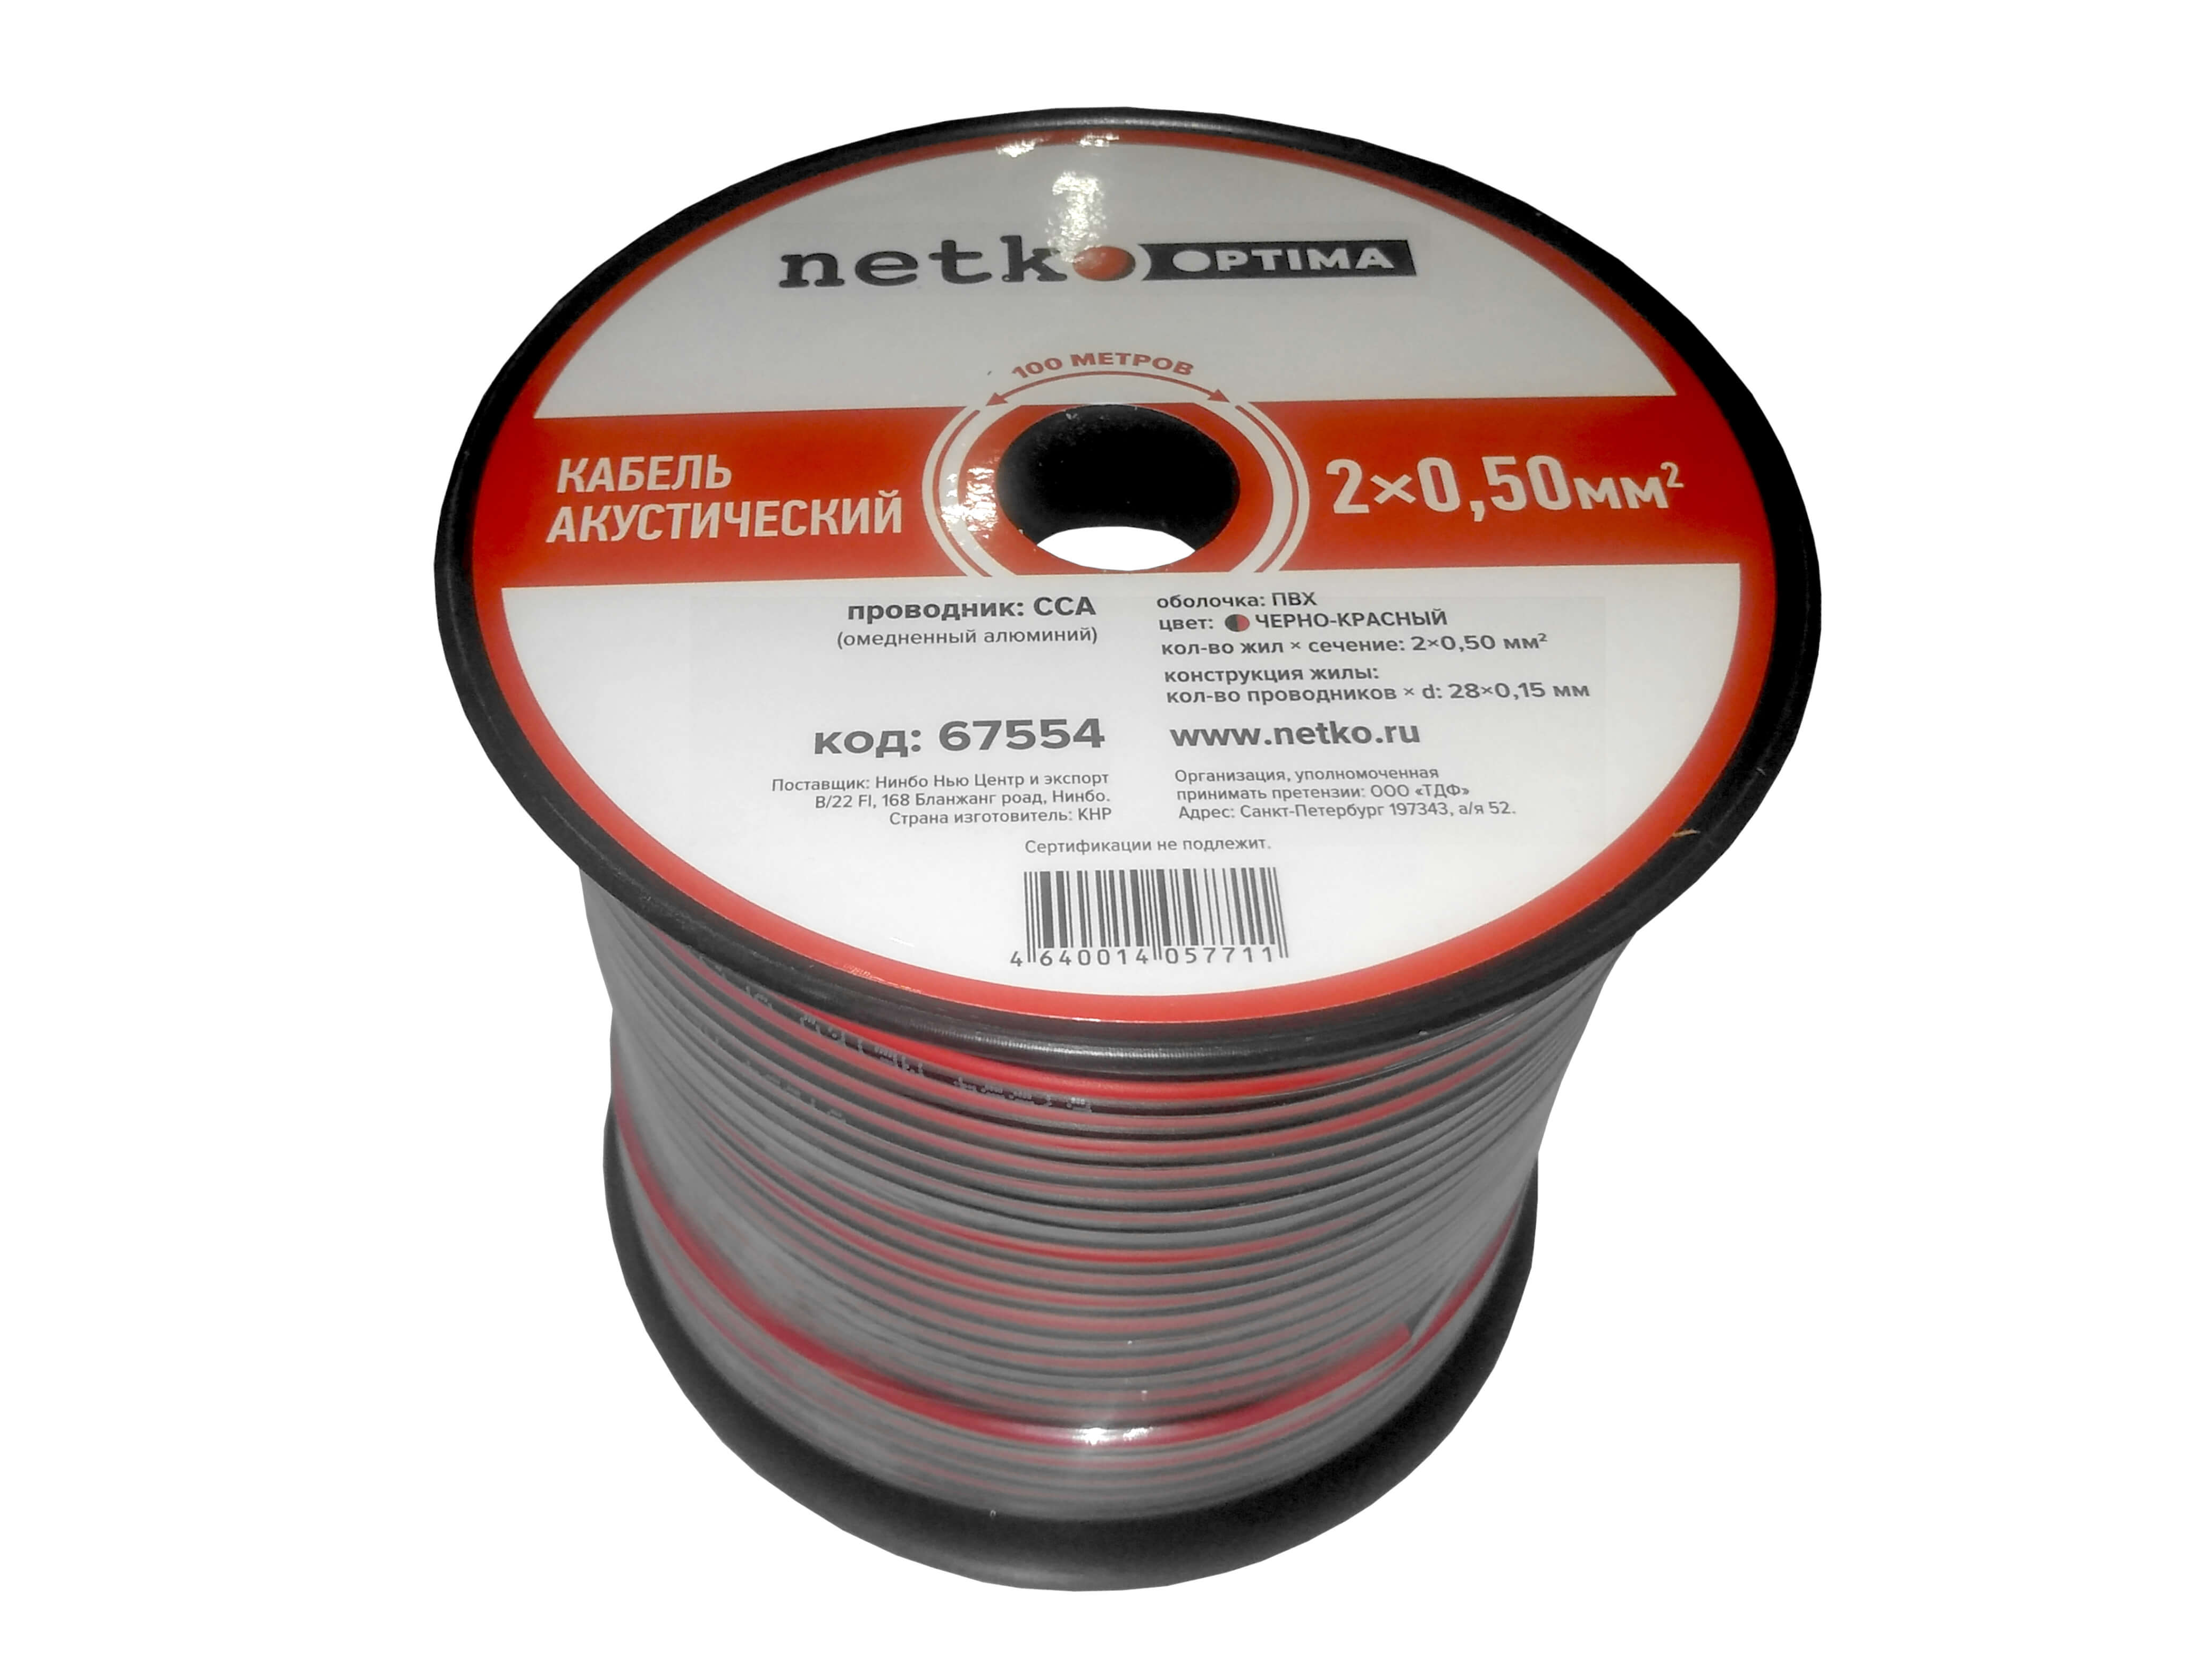 Акустический кабель NETKO N.050.ACC.67554.2X.1/4B, 2x0.5 мм², омедненный алюминий, 100 м, черный/красный (67554)